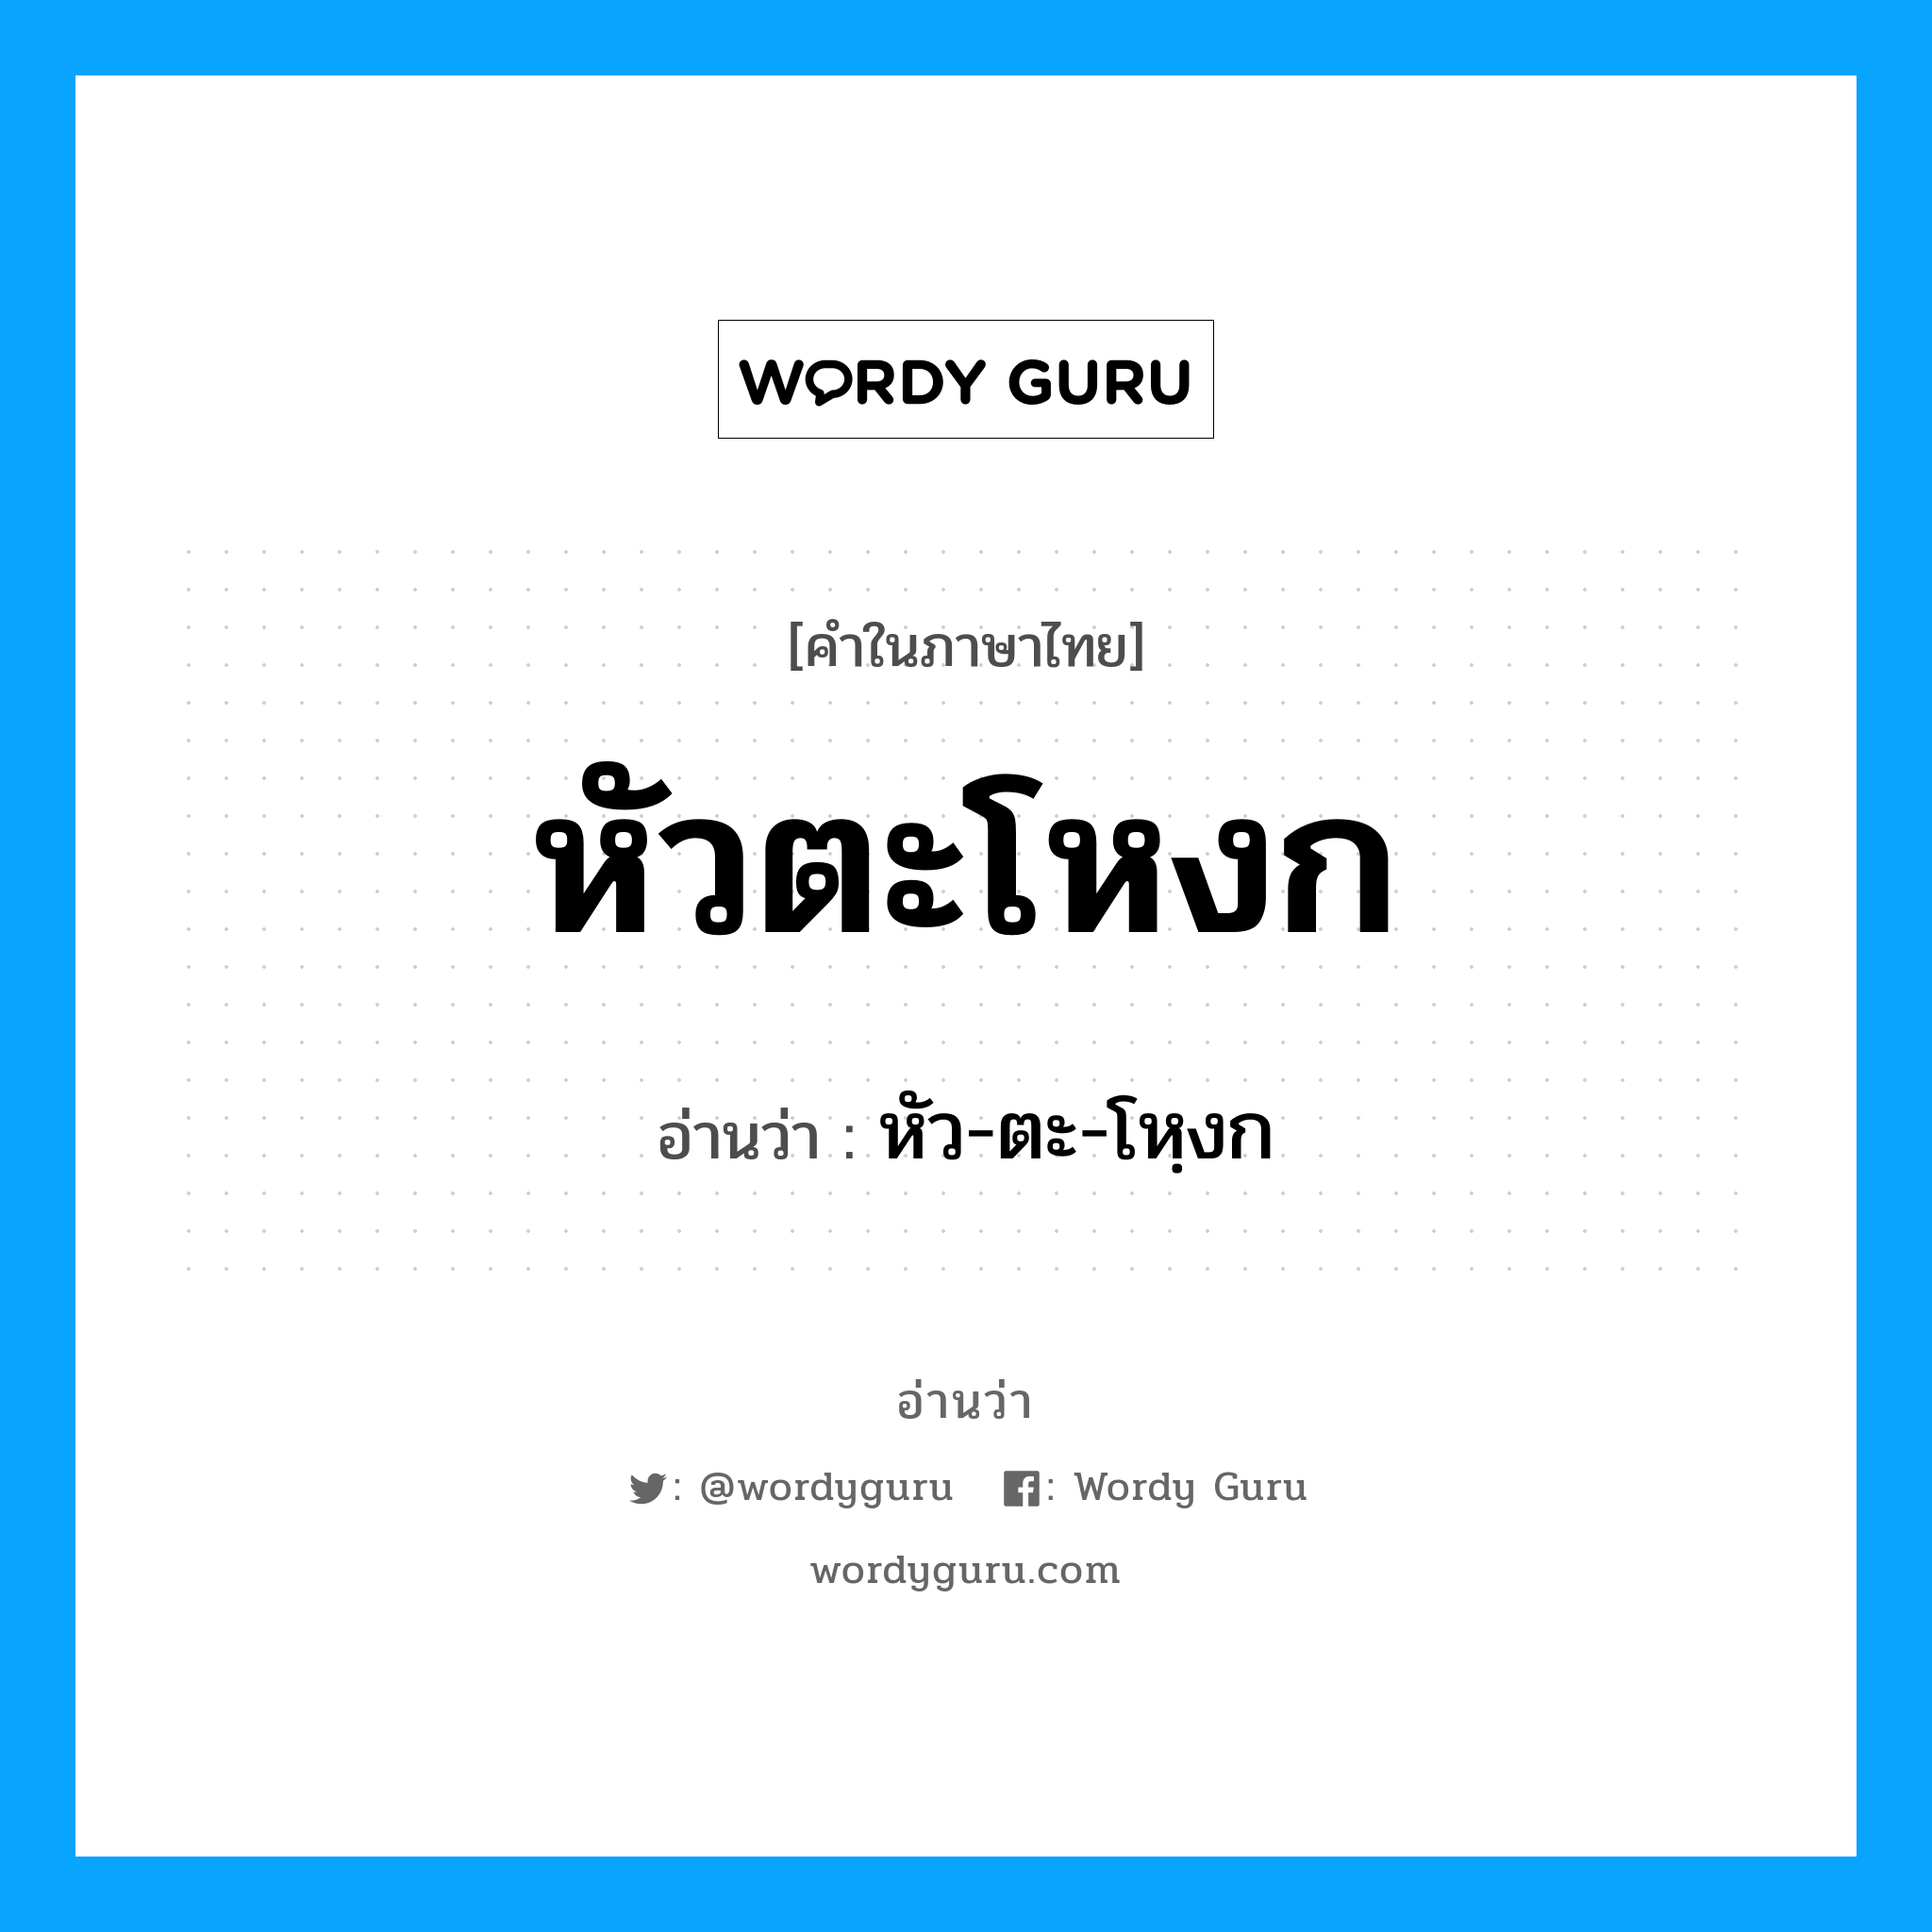 หัว-ตะ-โหฺงก เป็นคำอ่านของคำไหน?, คำในภาษาไทย หัว-ตะ-โหฺงก อ่านว่า หัวตะโหงก